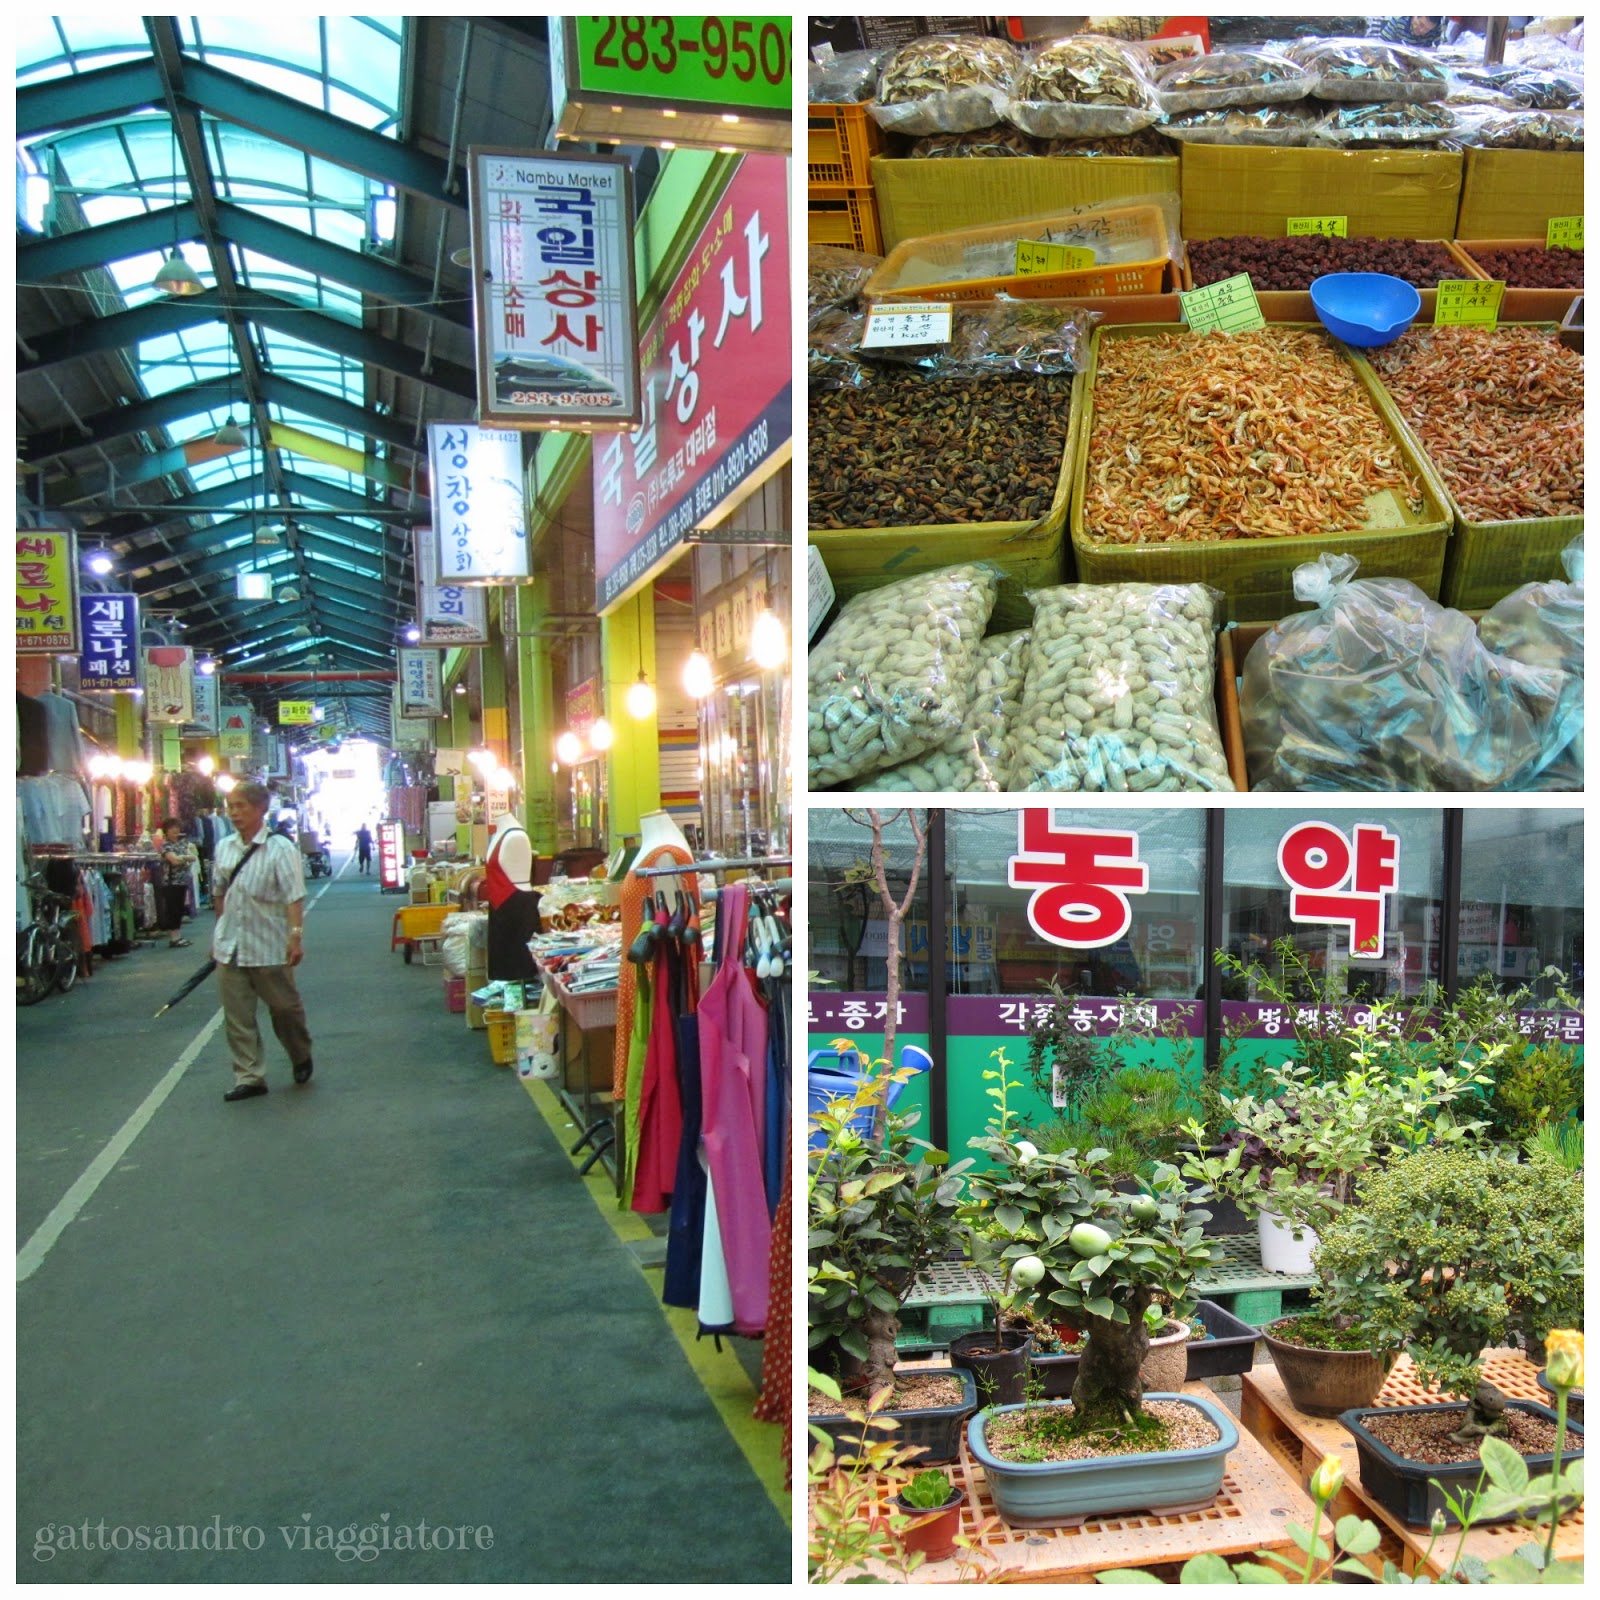 Jeonju Nambu Market